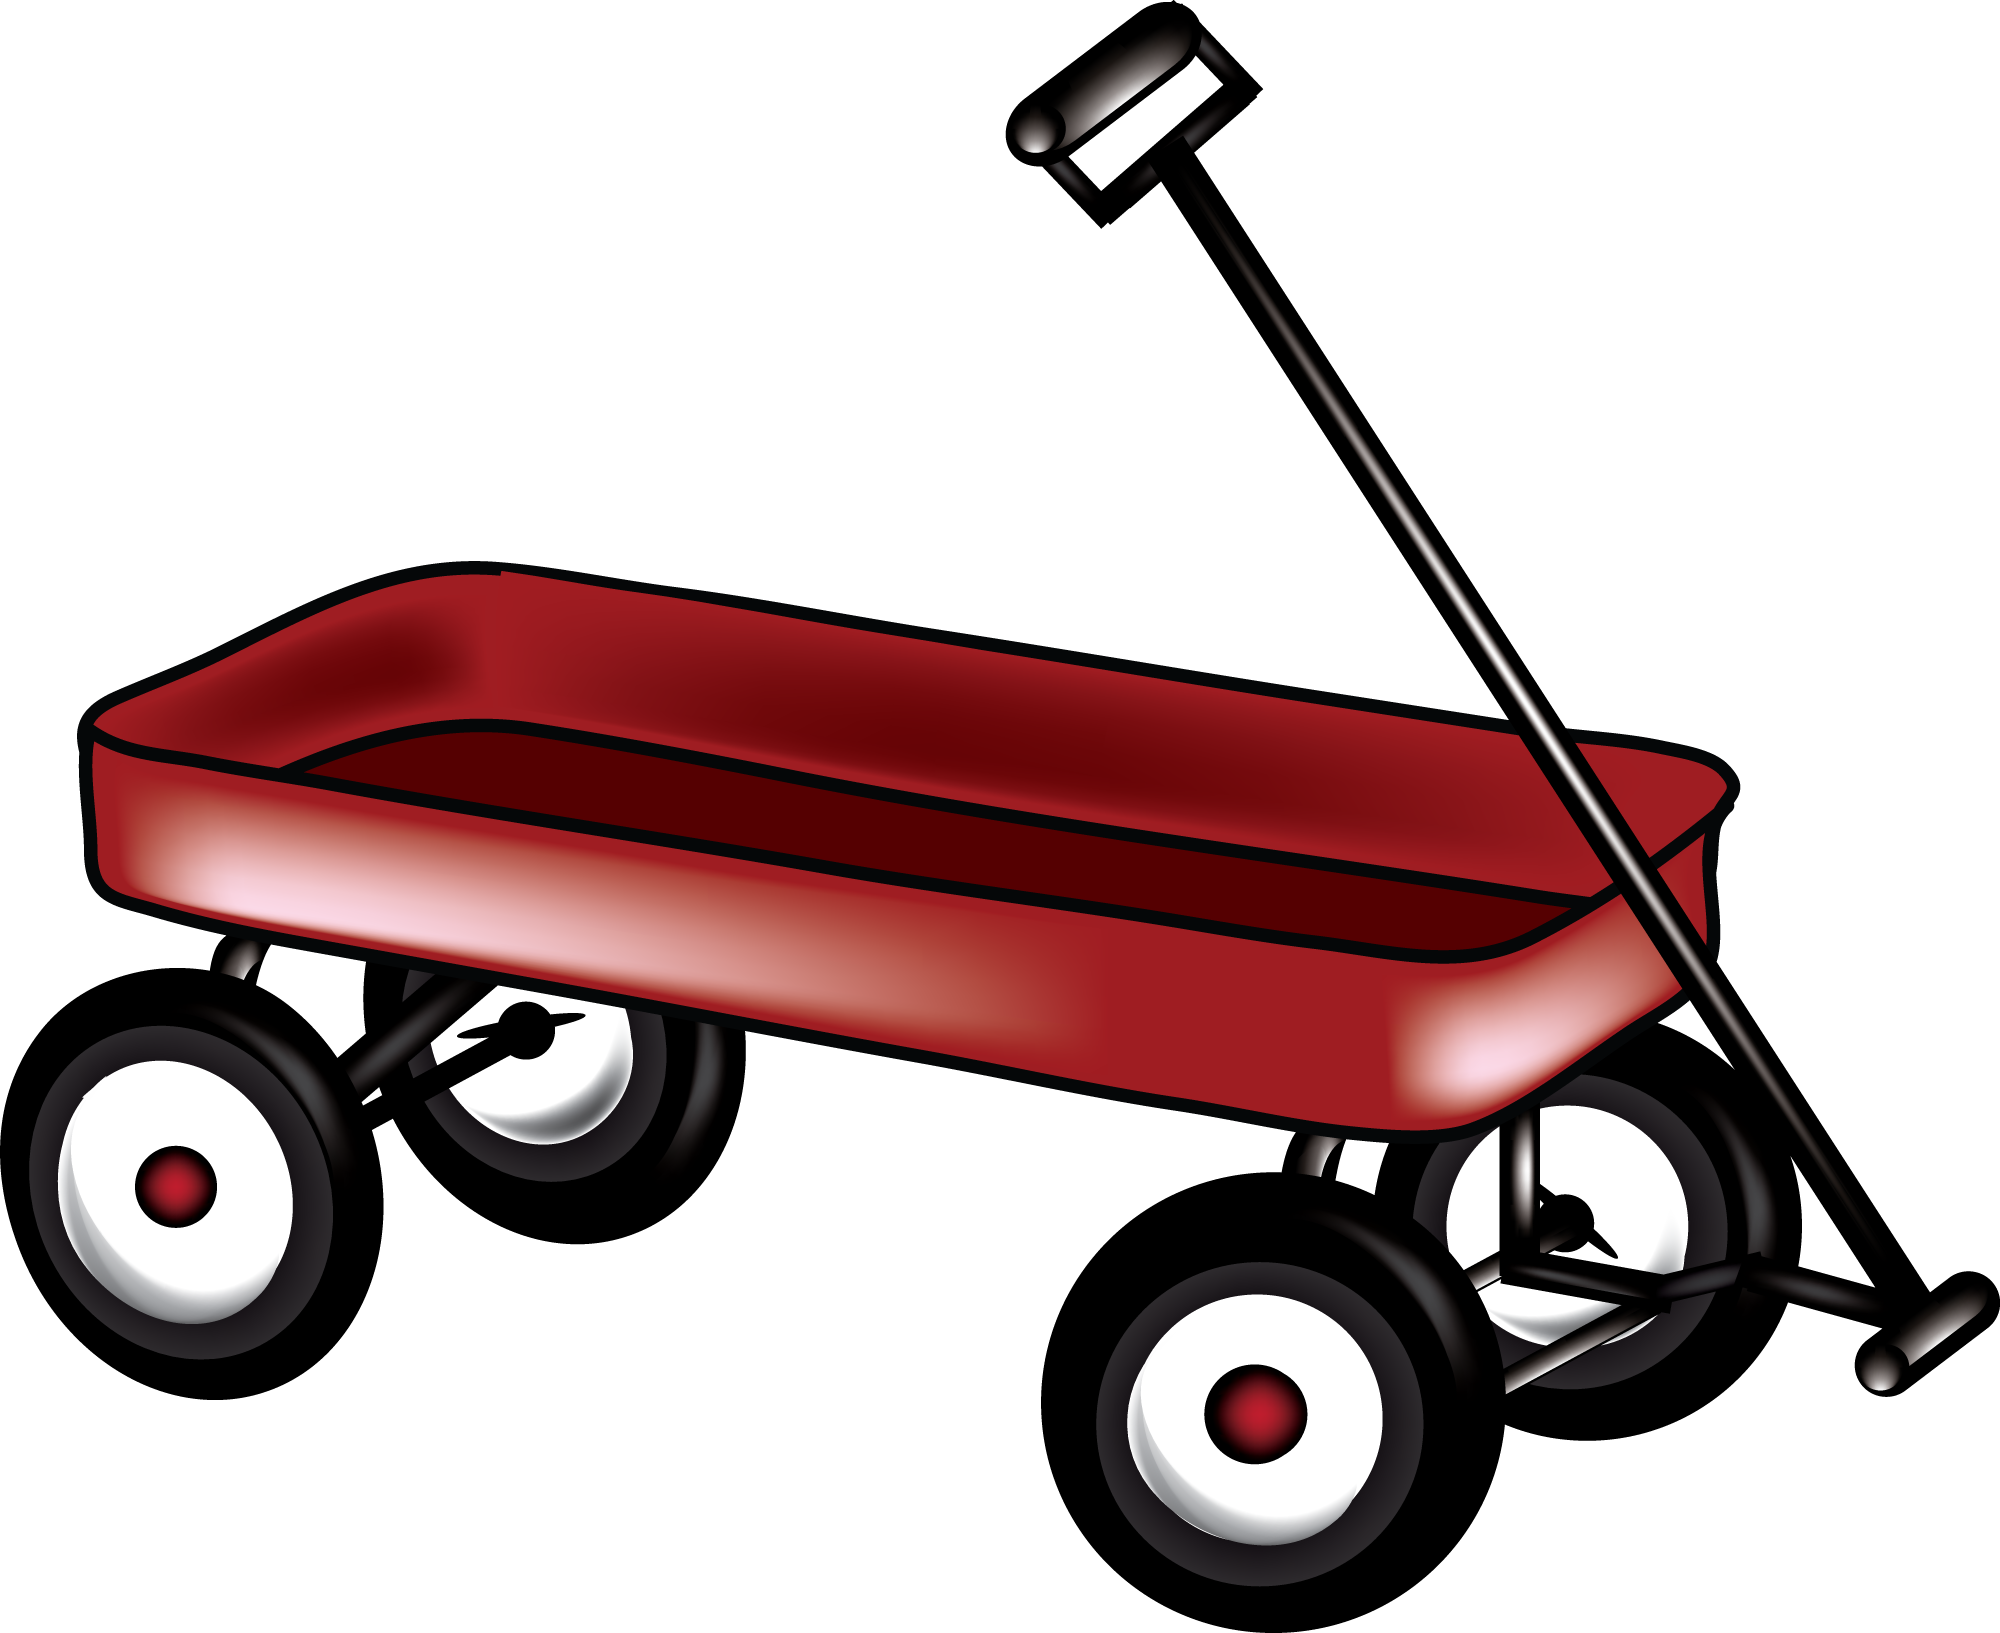 Тележка Red Wagon. Тележка рисунок для детей. Телега для детей. Тележка на прозрачном фоне.